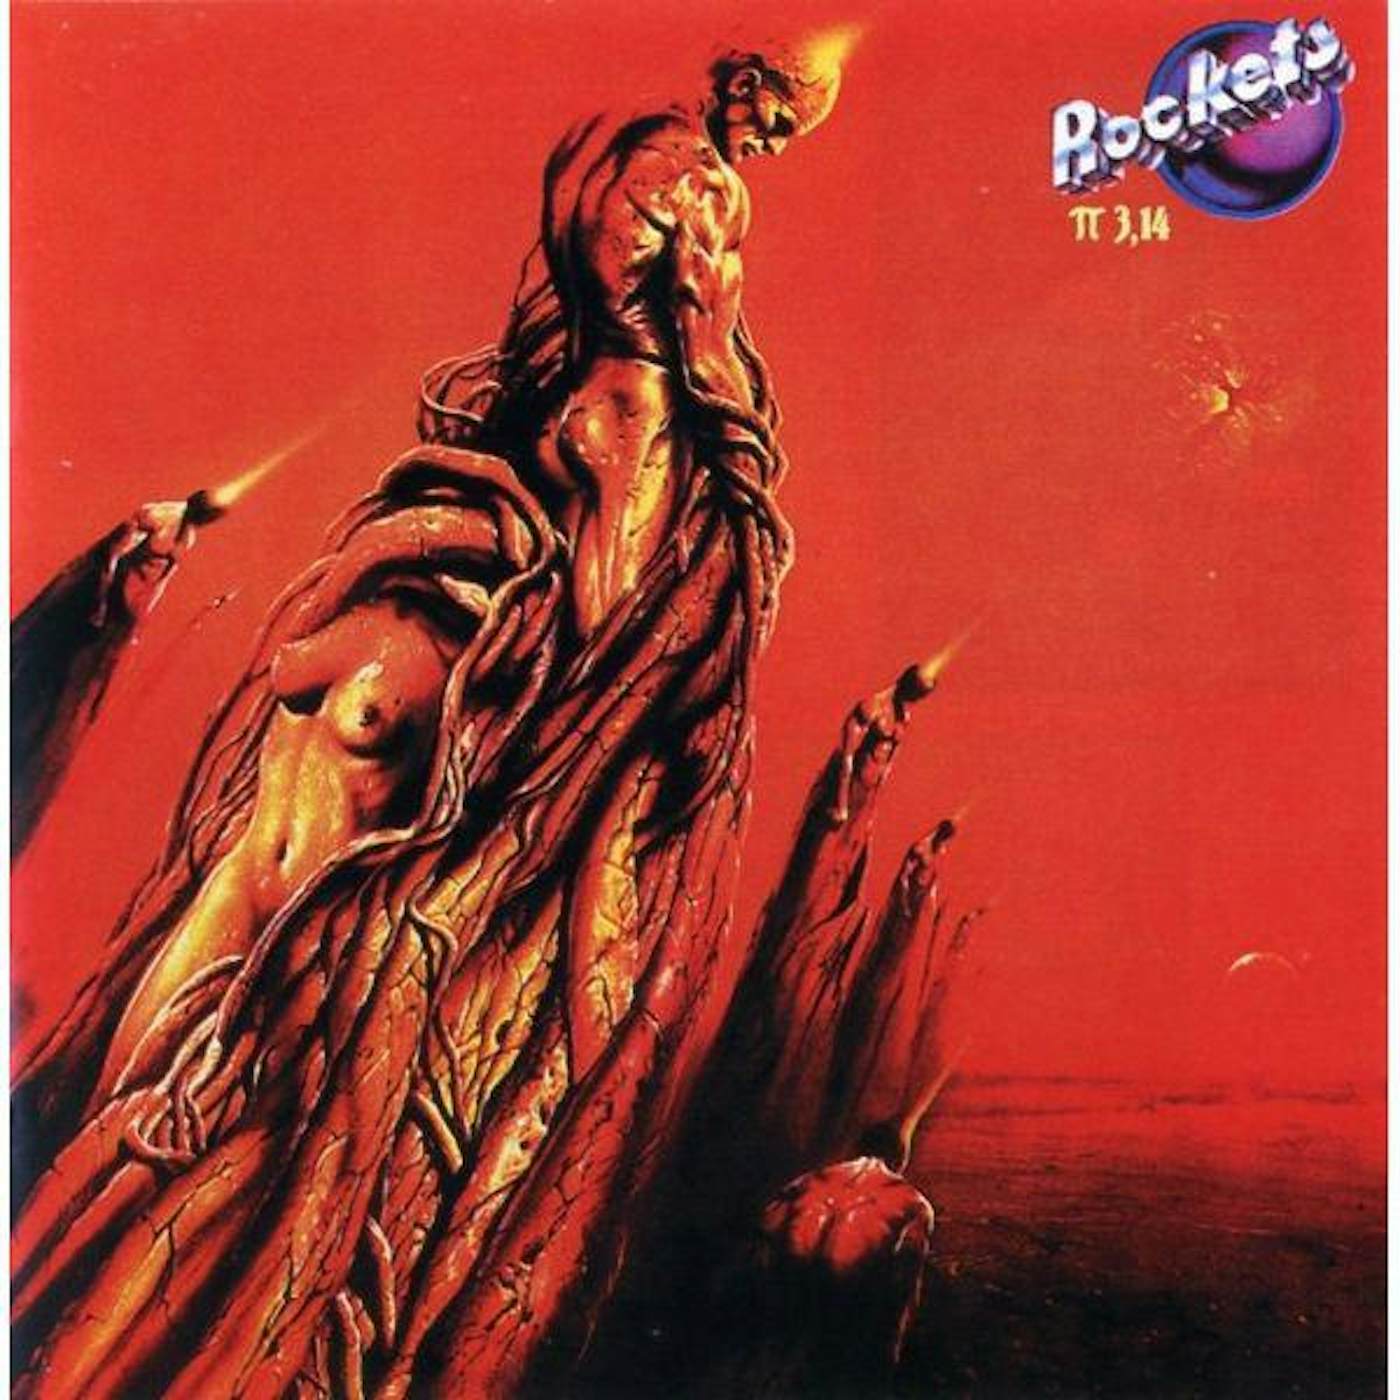 Rockets Π 3,14 Vinyl Record